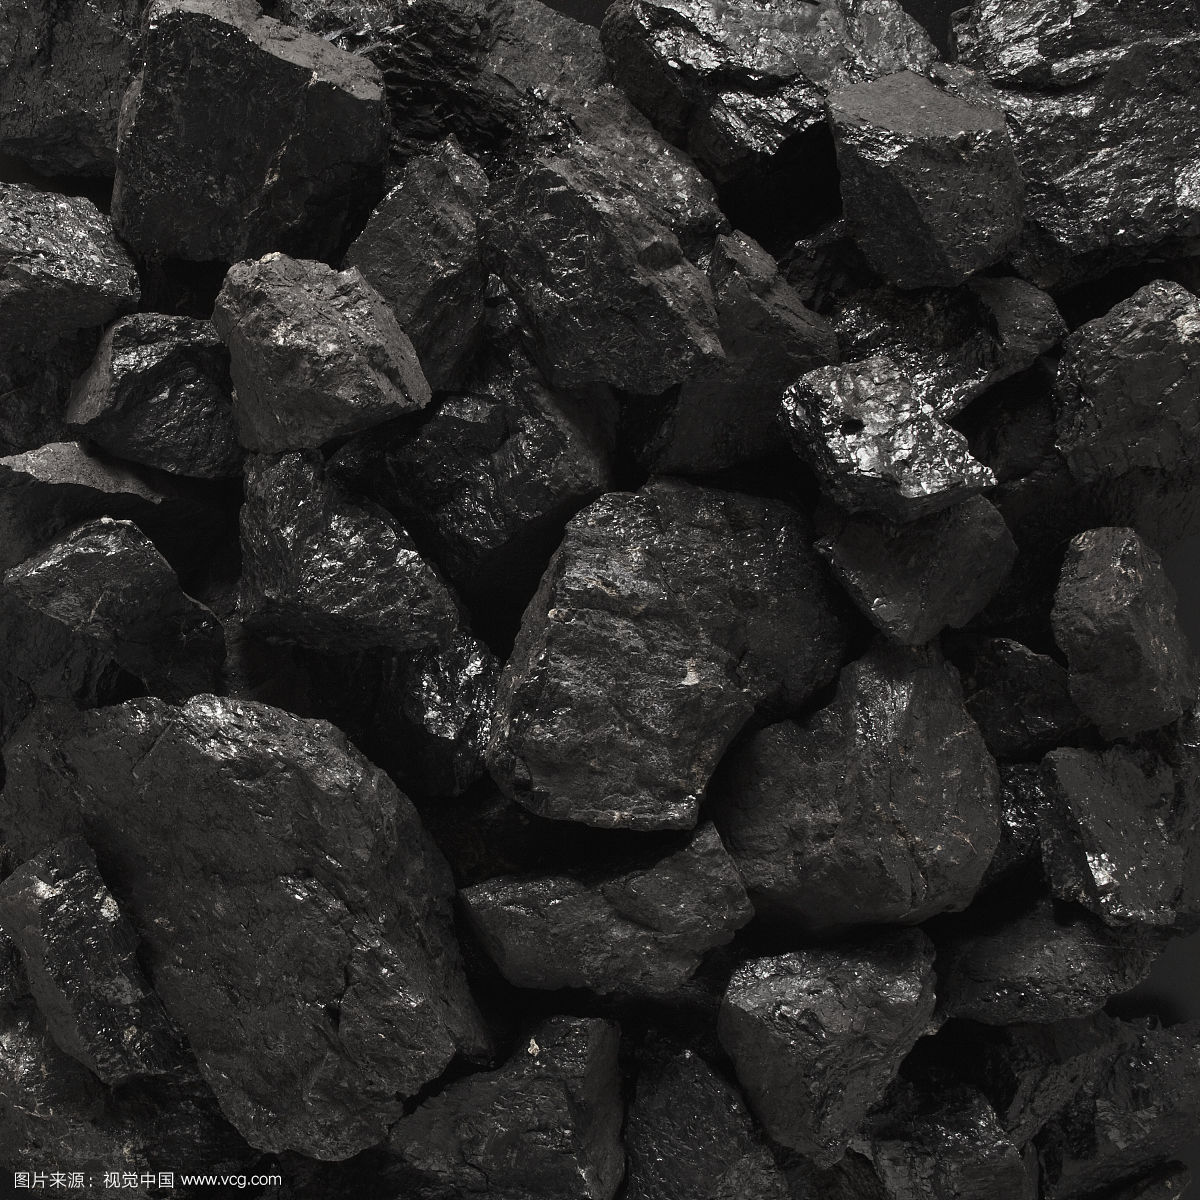 石炭二疊紀含煤地層